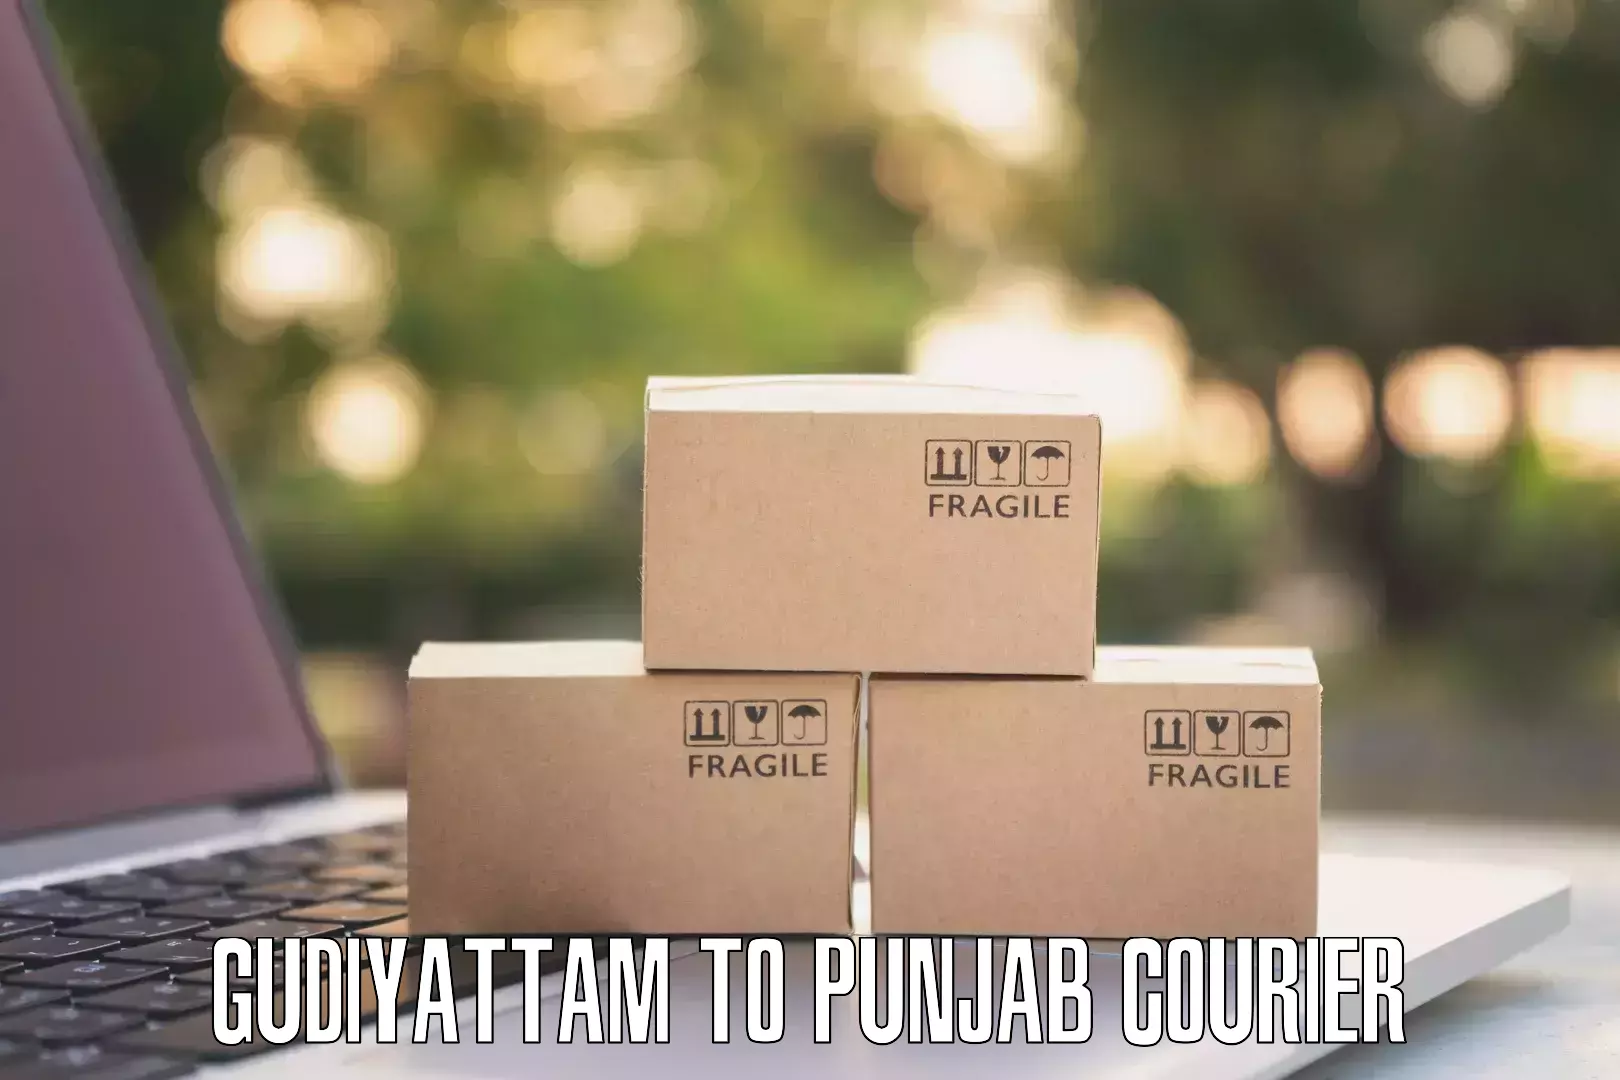 Parcel service for businesses in Gudiyattam to Central University of Punjab Bathinda